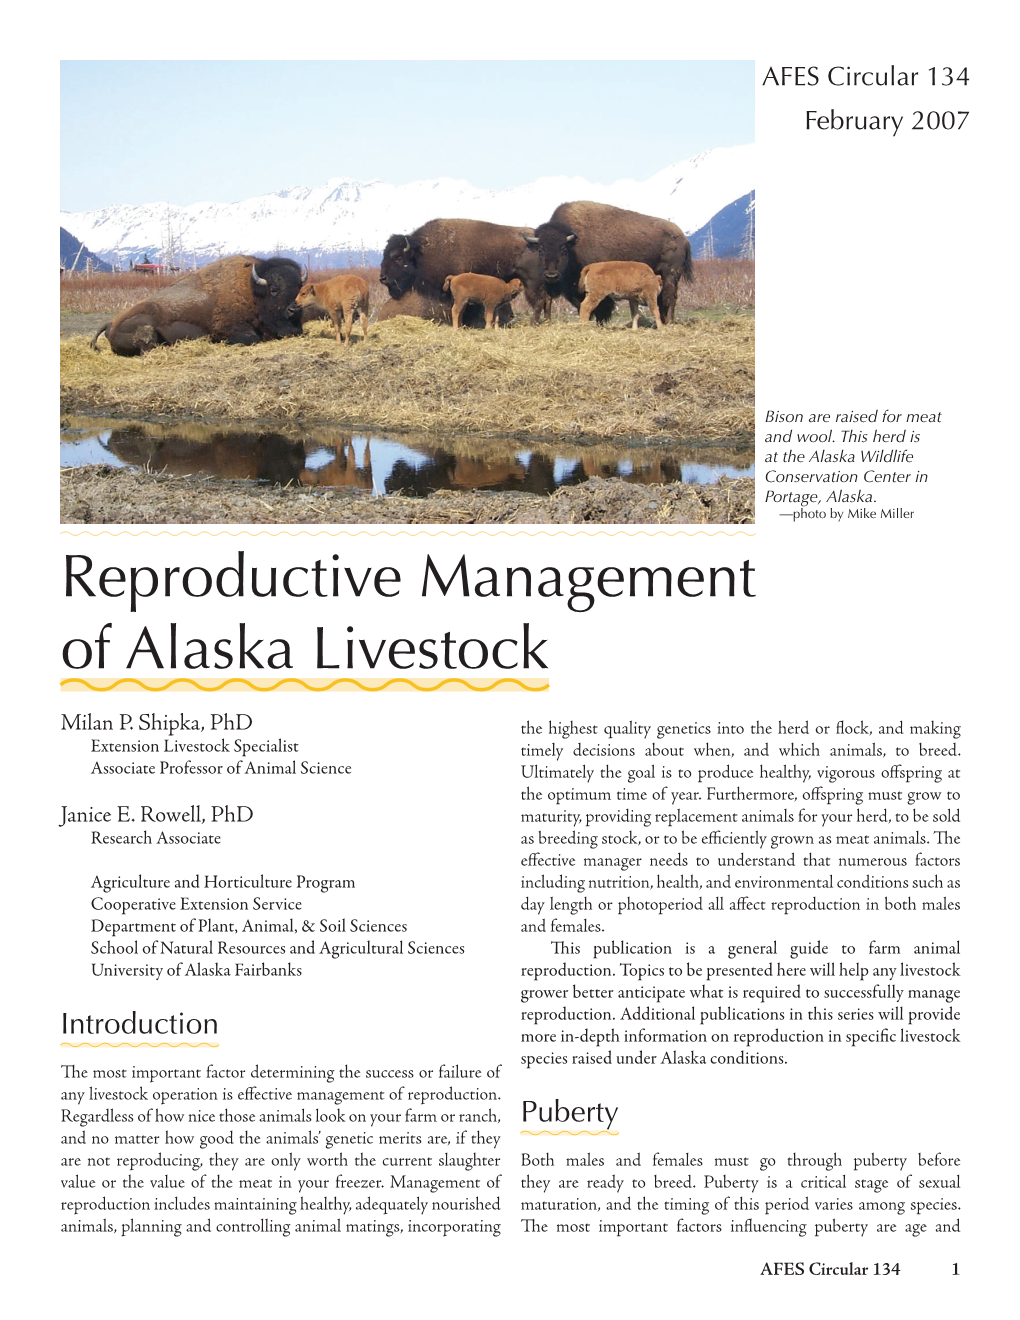 Reproductive Management of Alaska Livestock